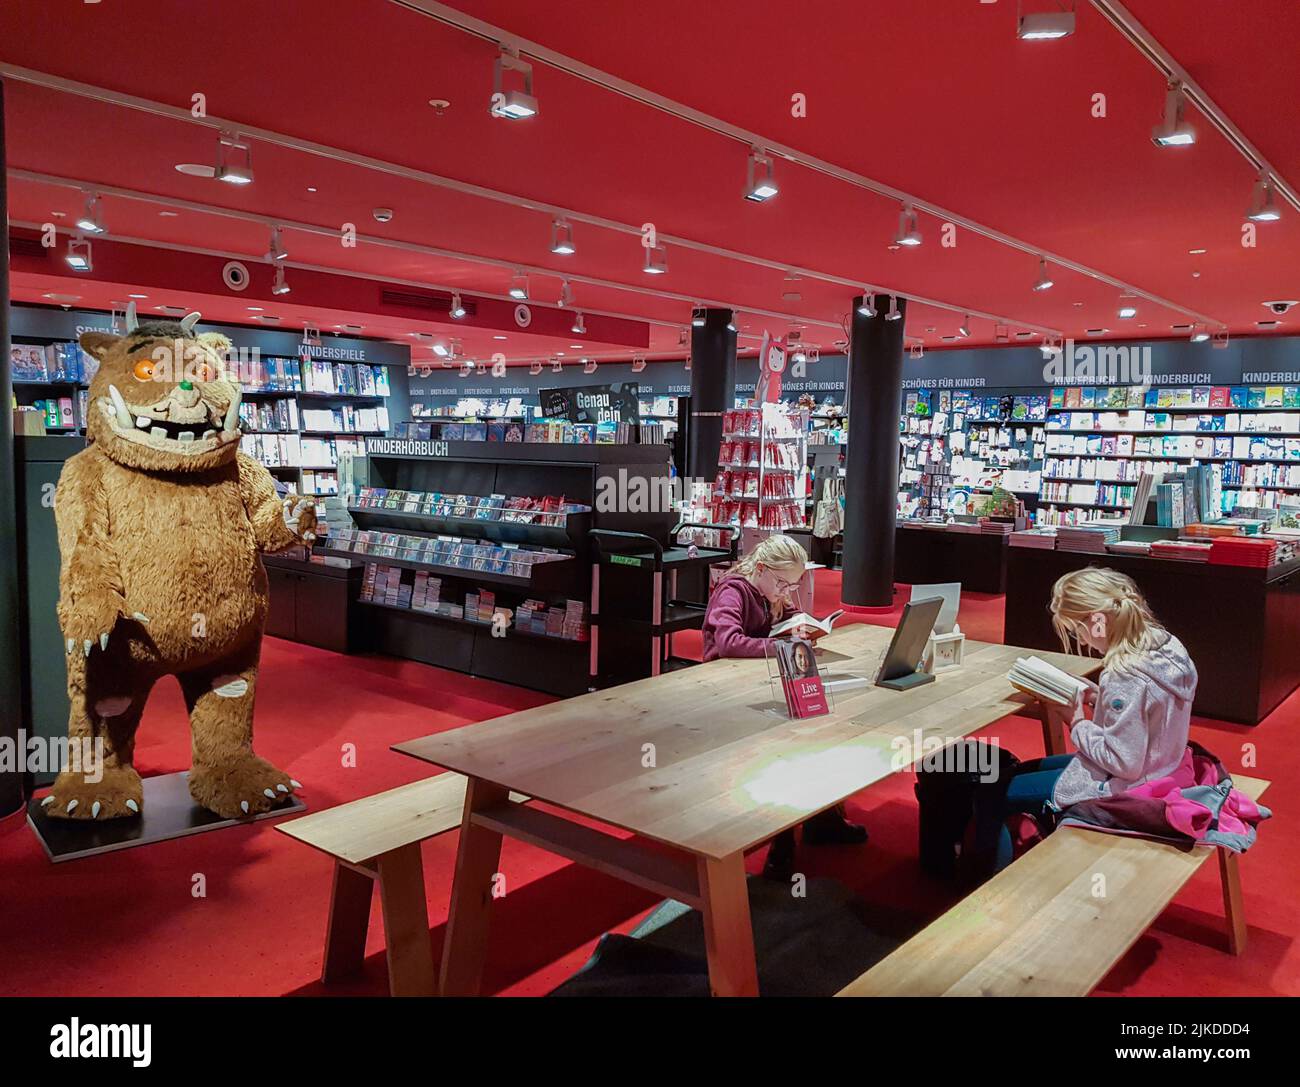 Berlino, Germania, ottobre 2019: All'interno di una libreria del Dipartimento della letteratura per bambini: Scaffali con libri, una rastrelliera con Tonies, un enorme Gruffalo, Foto Stock